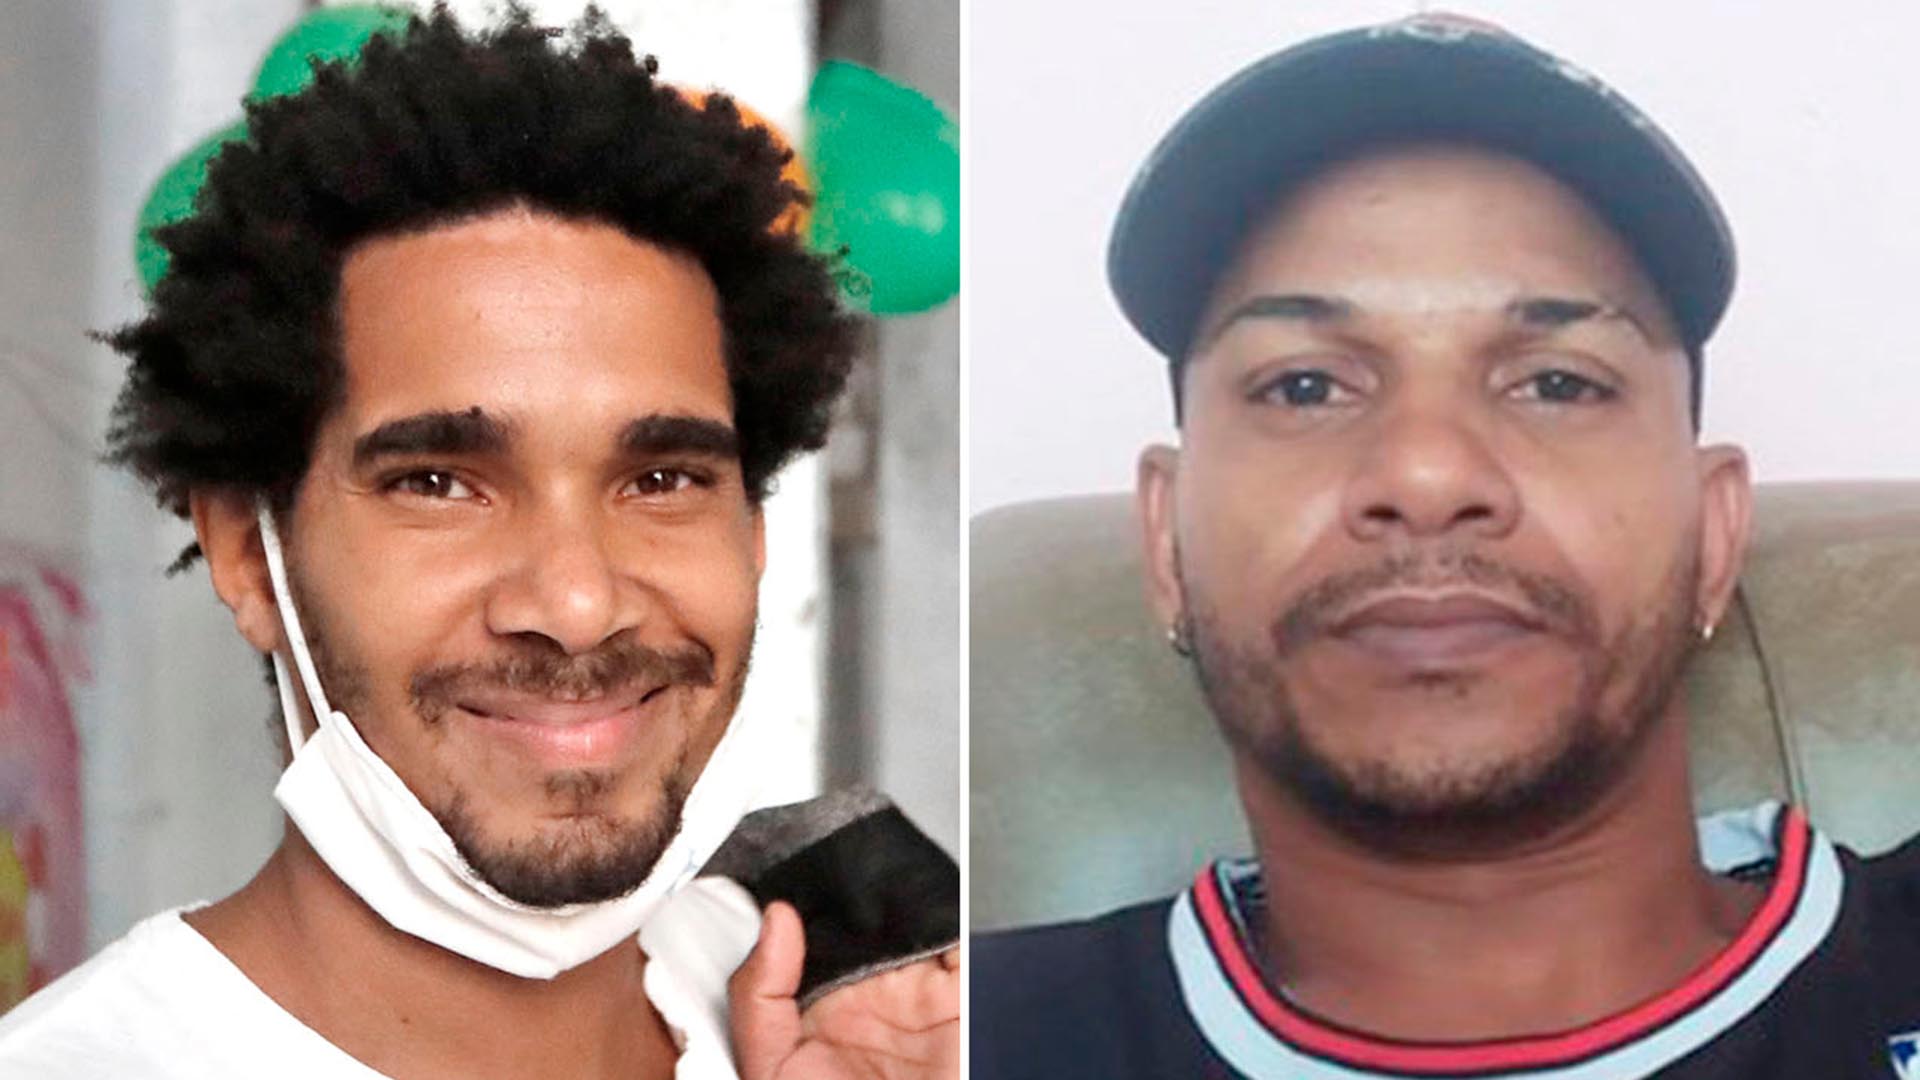 Persecución en Cuba: Estados Unidos repudió la condena a prisión de los artistas Luis Manuel Otero Alcántara y Maykel Castillo